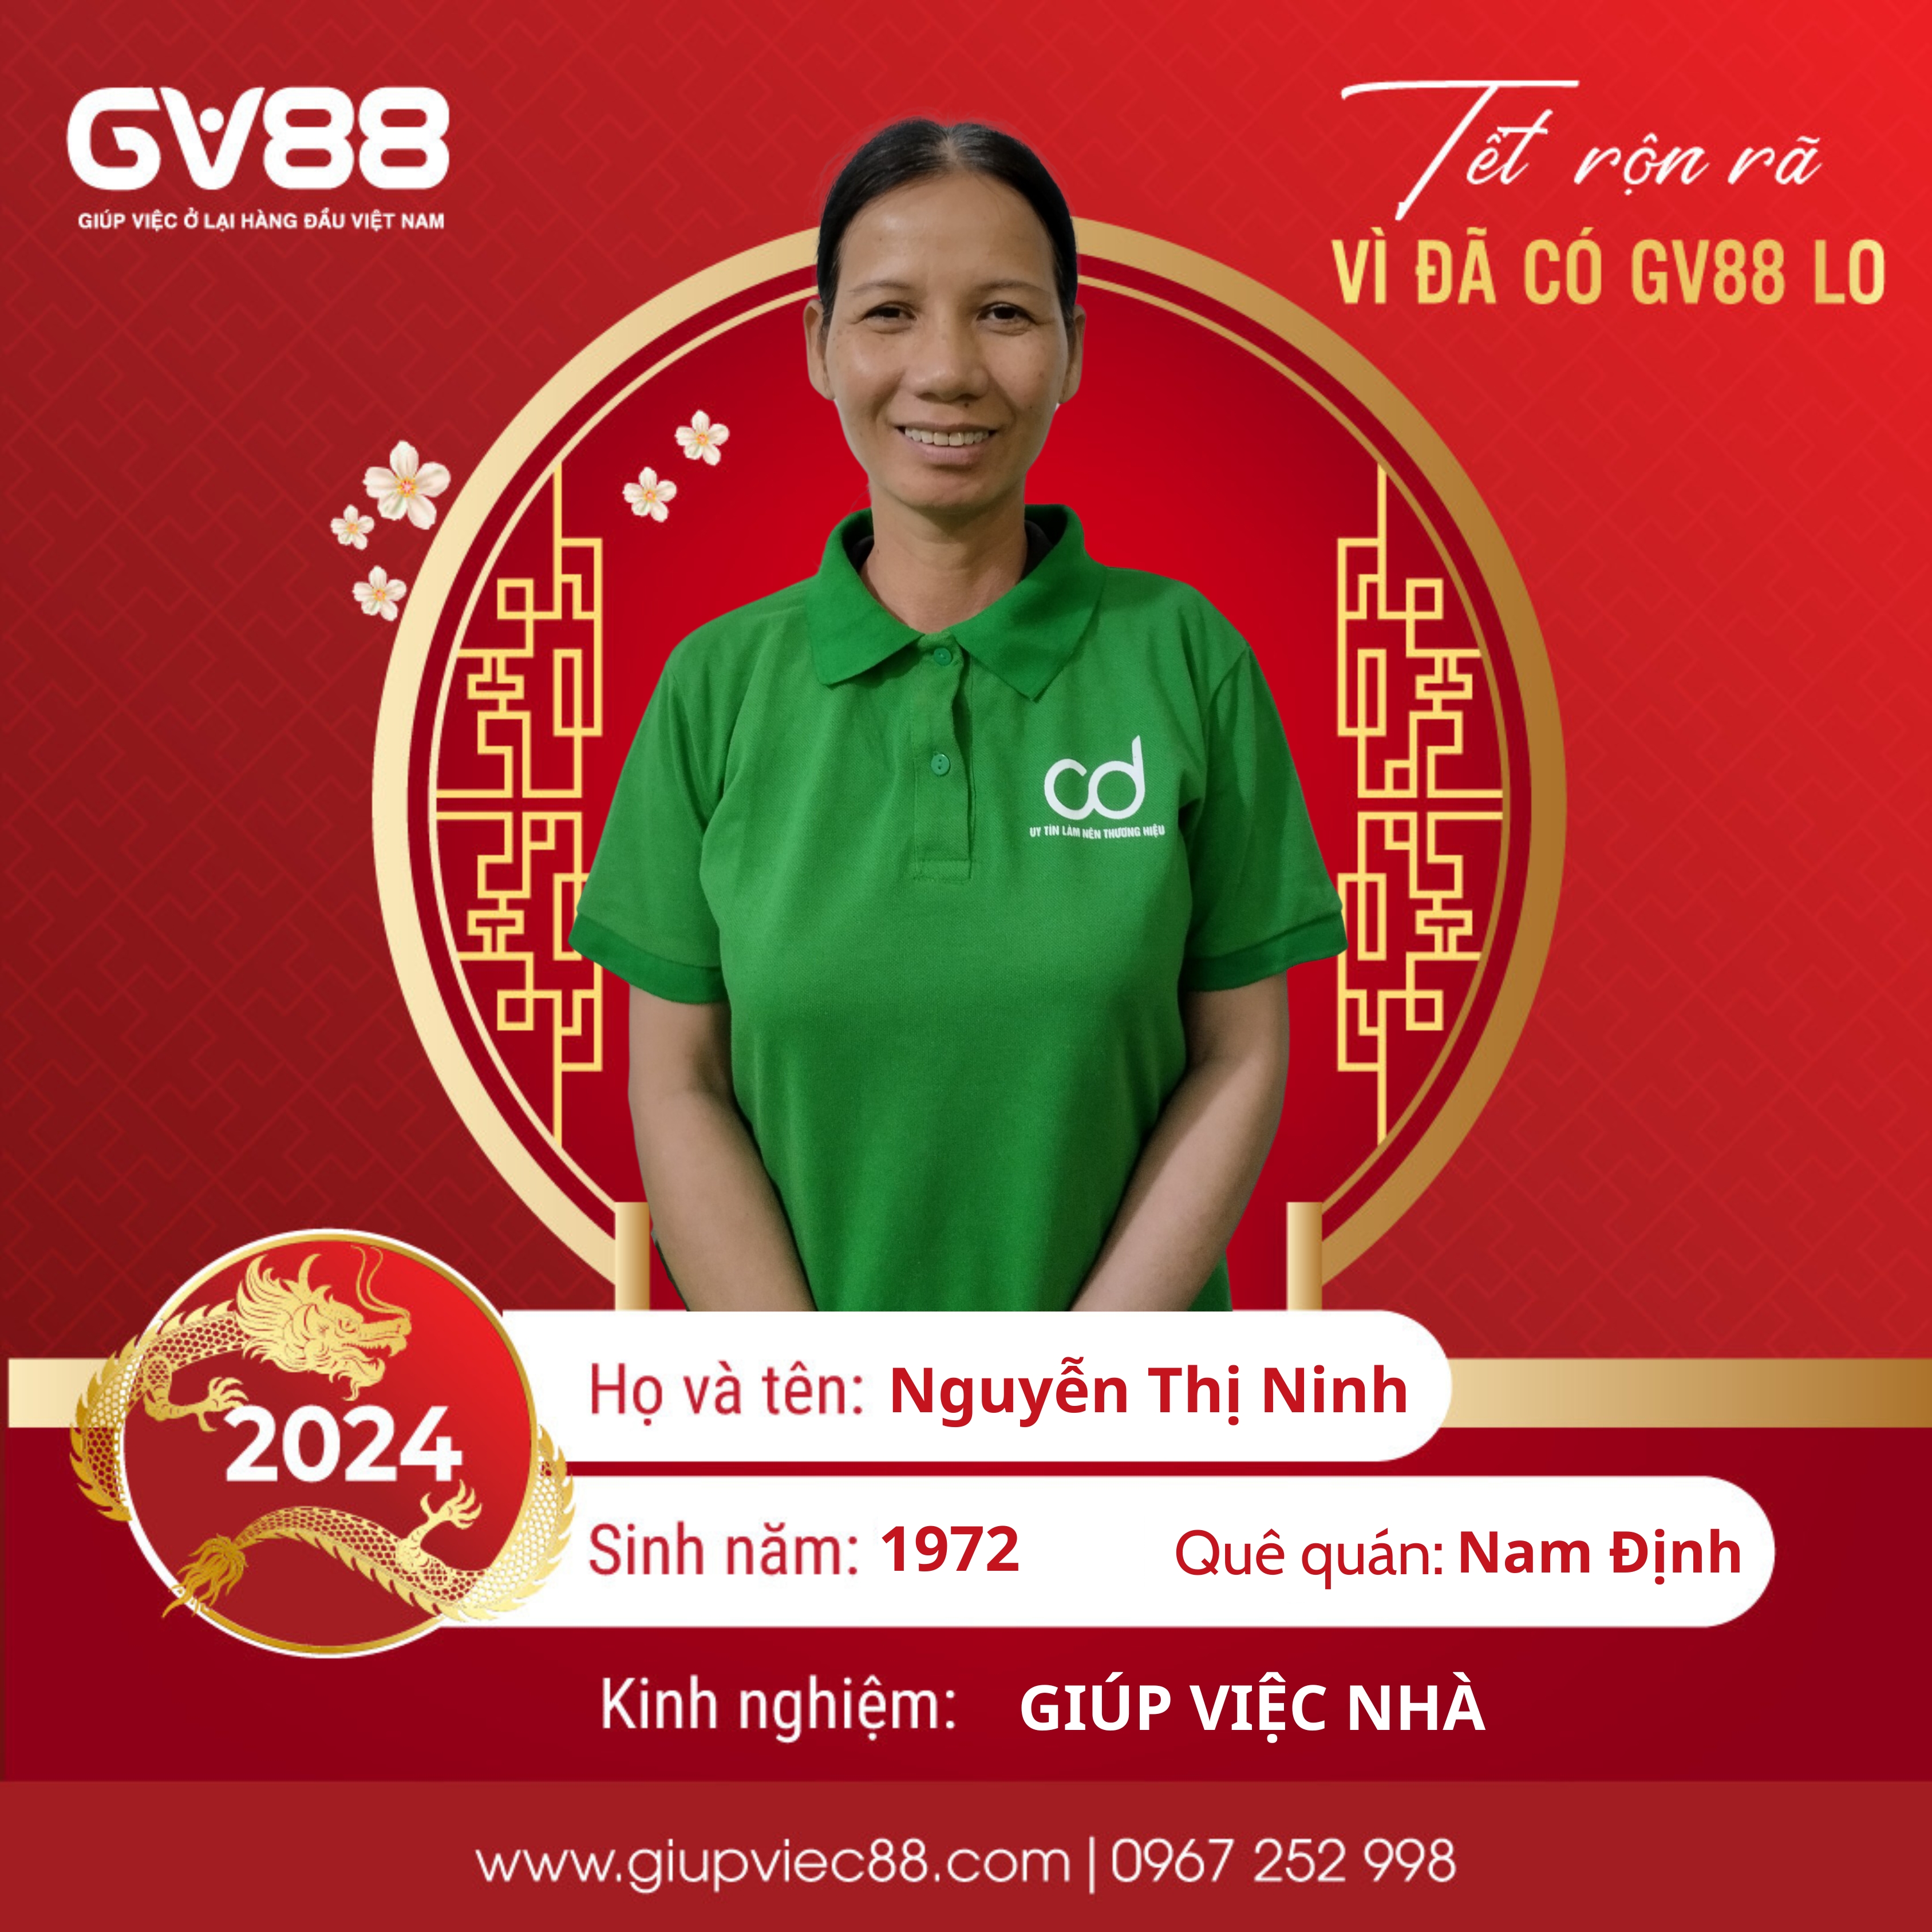 Nguyễn Thị Ninh